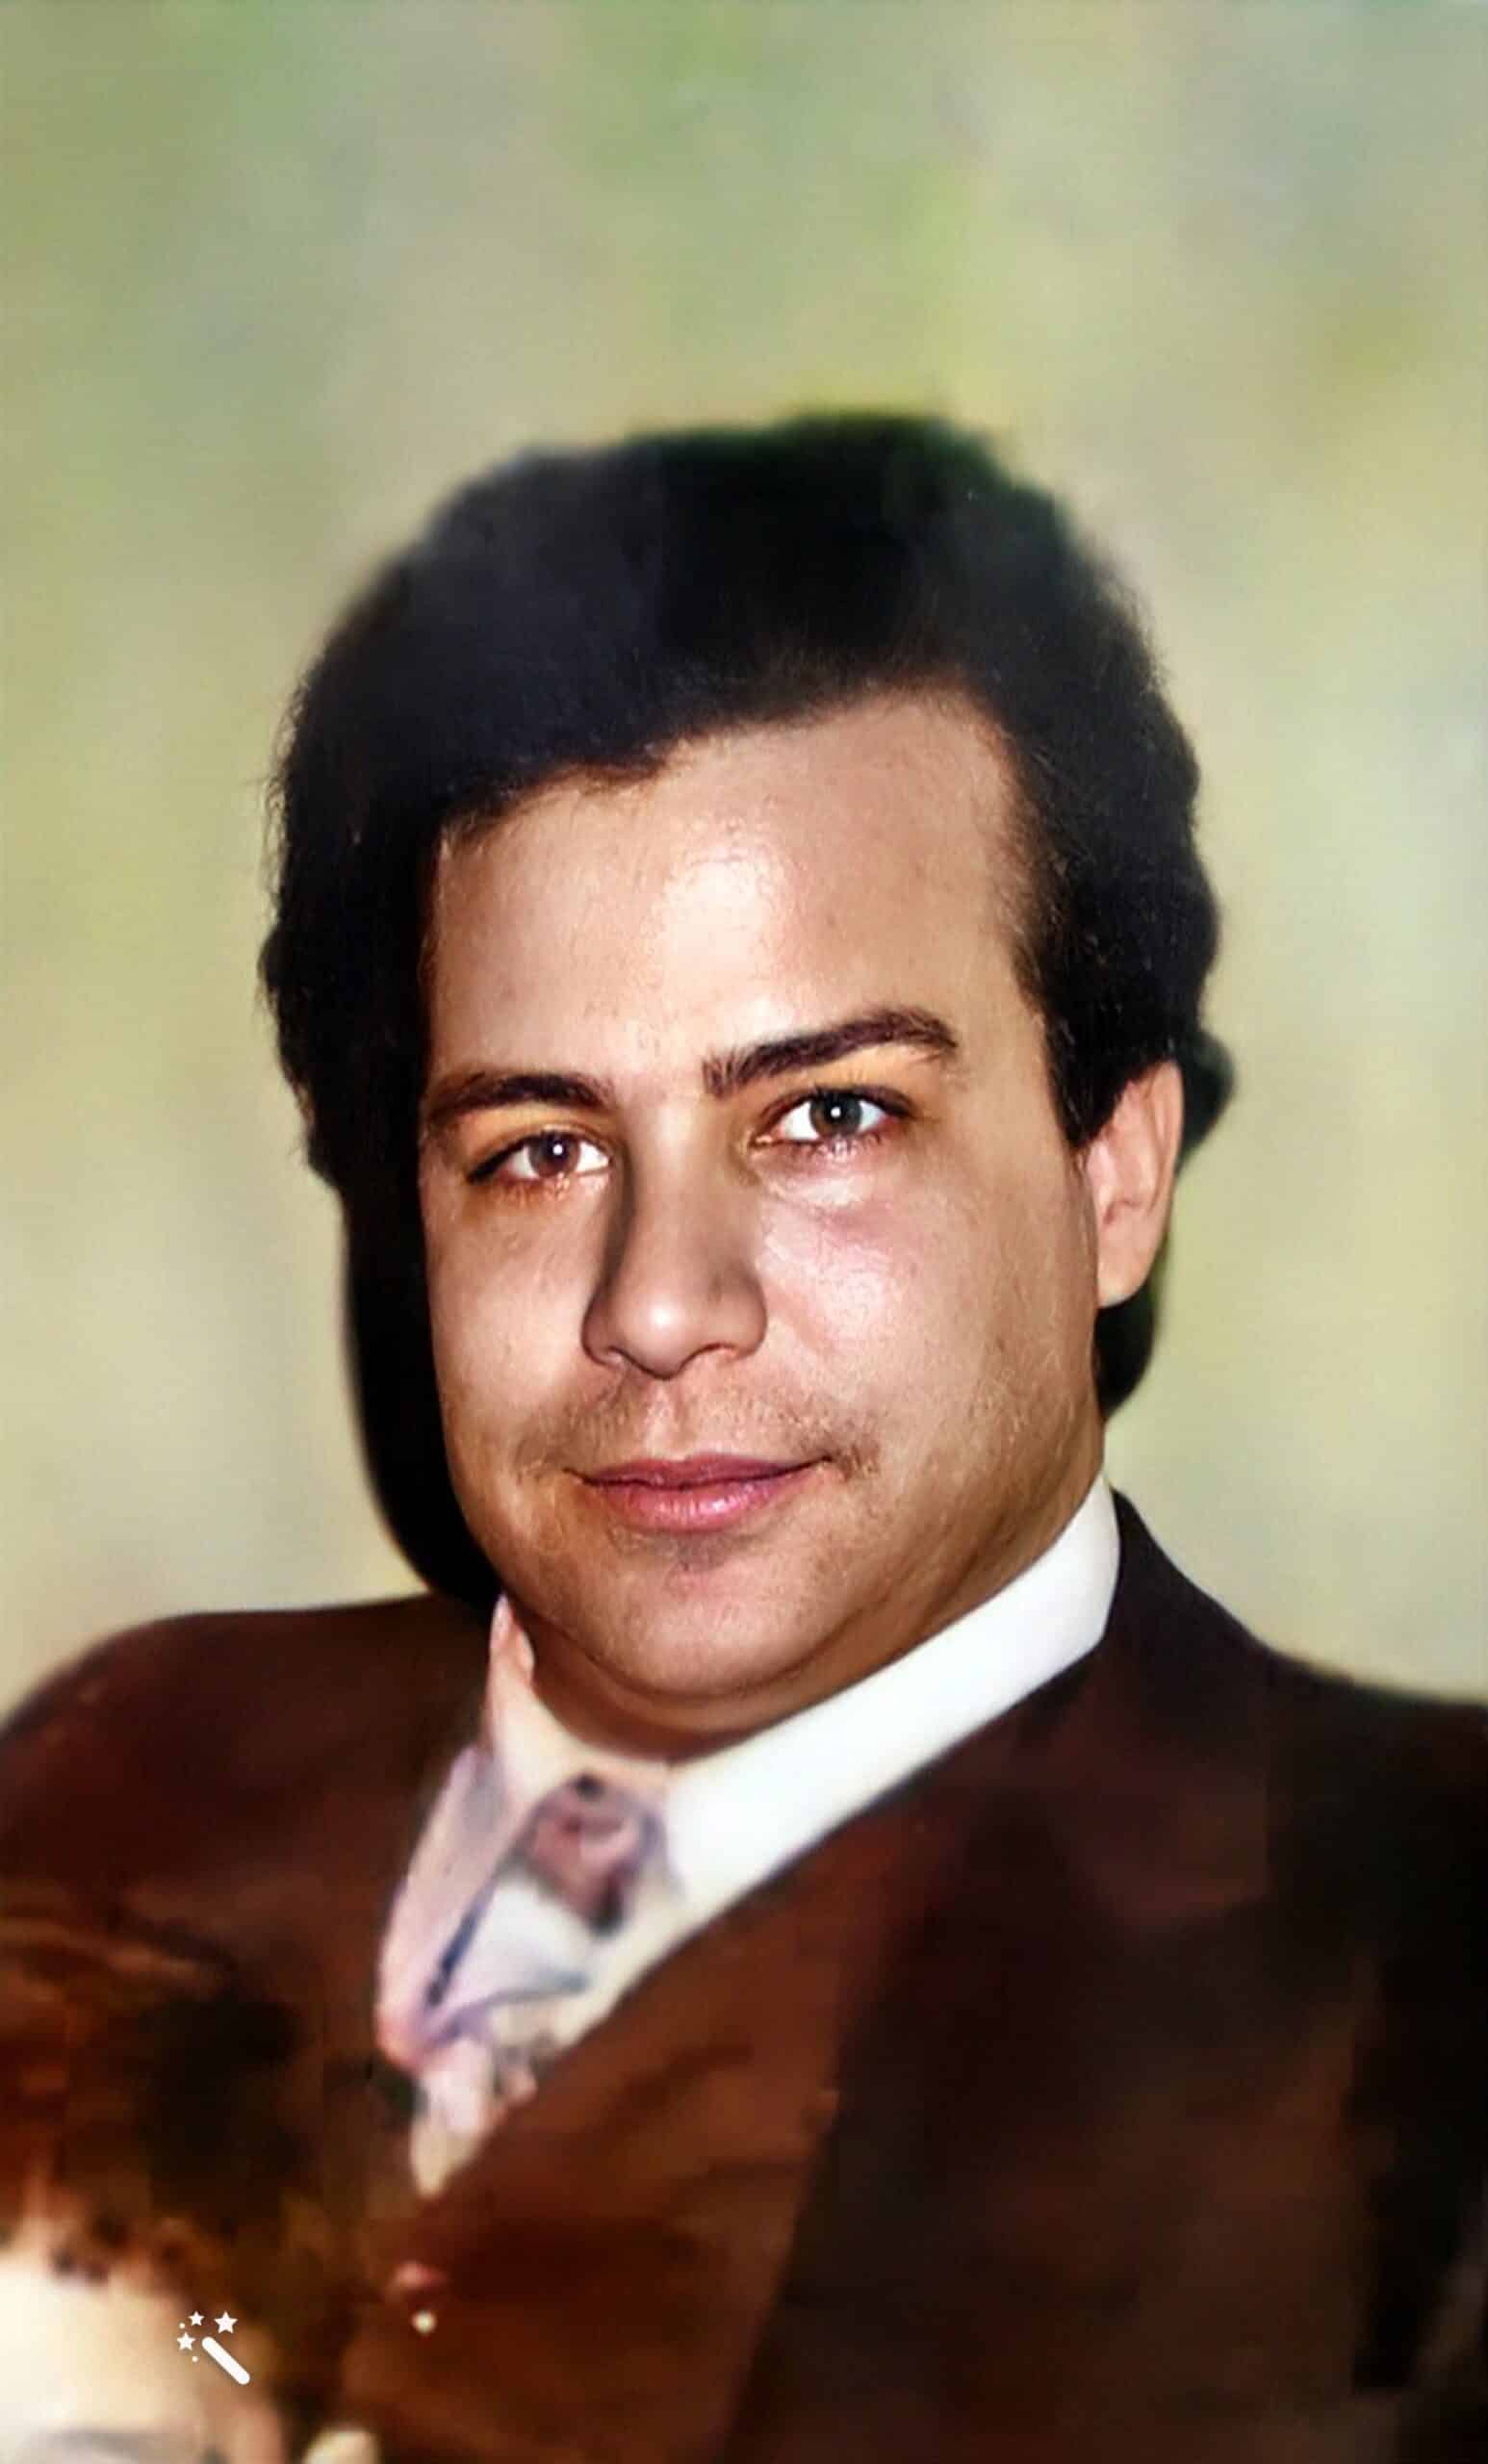 Mustafa, Kates biologischer Vater. Foto verbessert und Farben restauriert mit MyHeritage